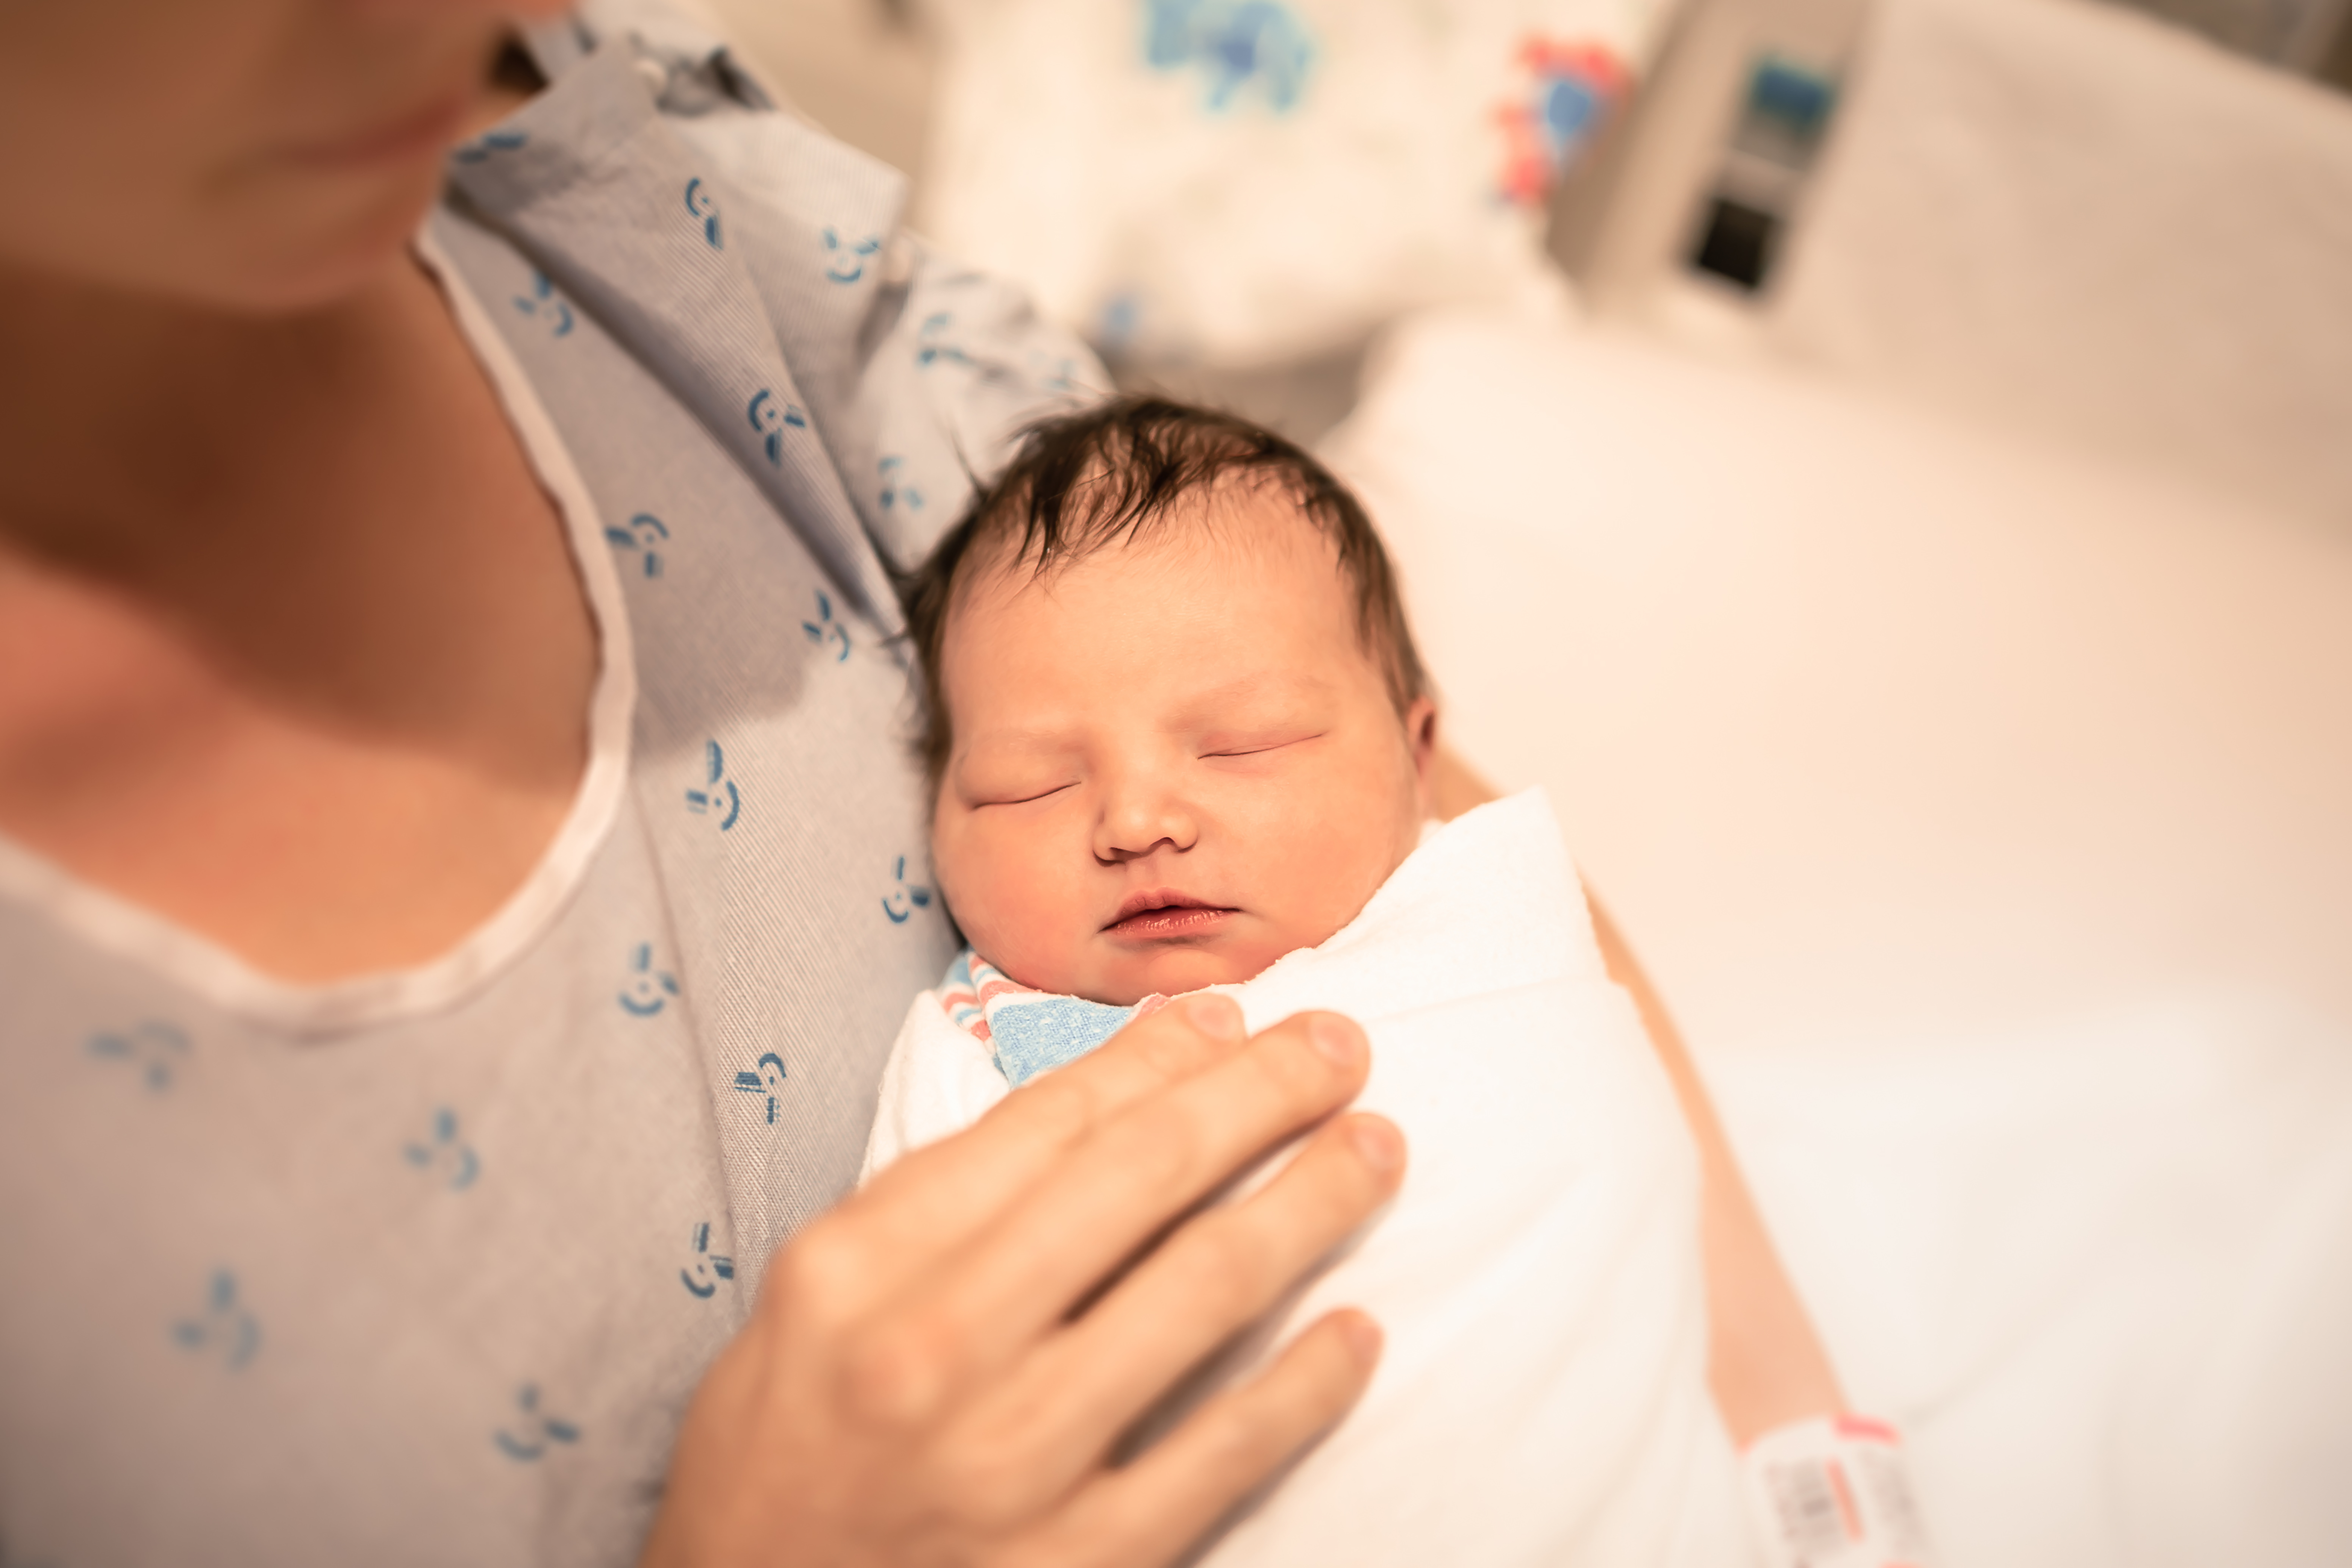 Bebé recién nacido envuelto en una manta | Fuente: Shutterstock.com